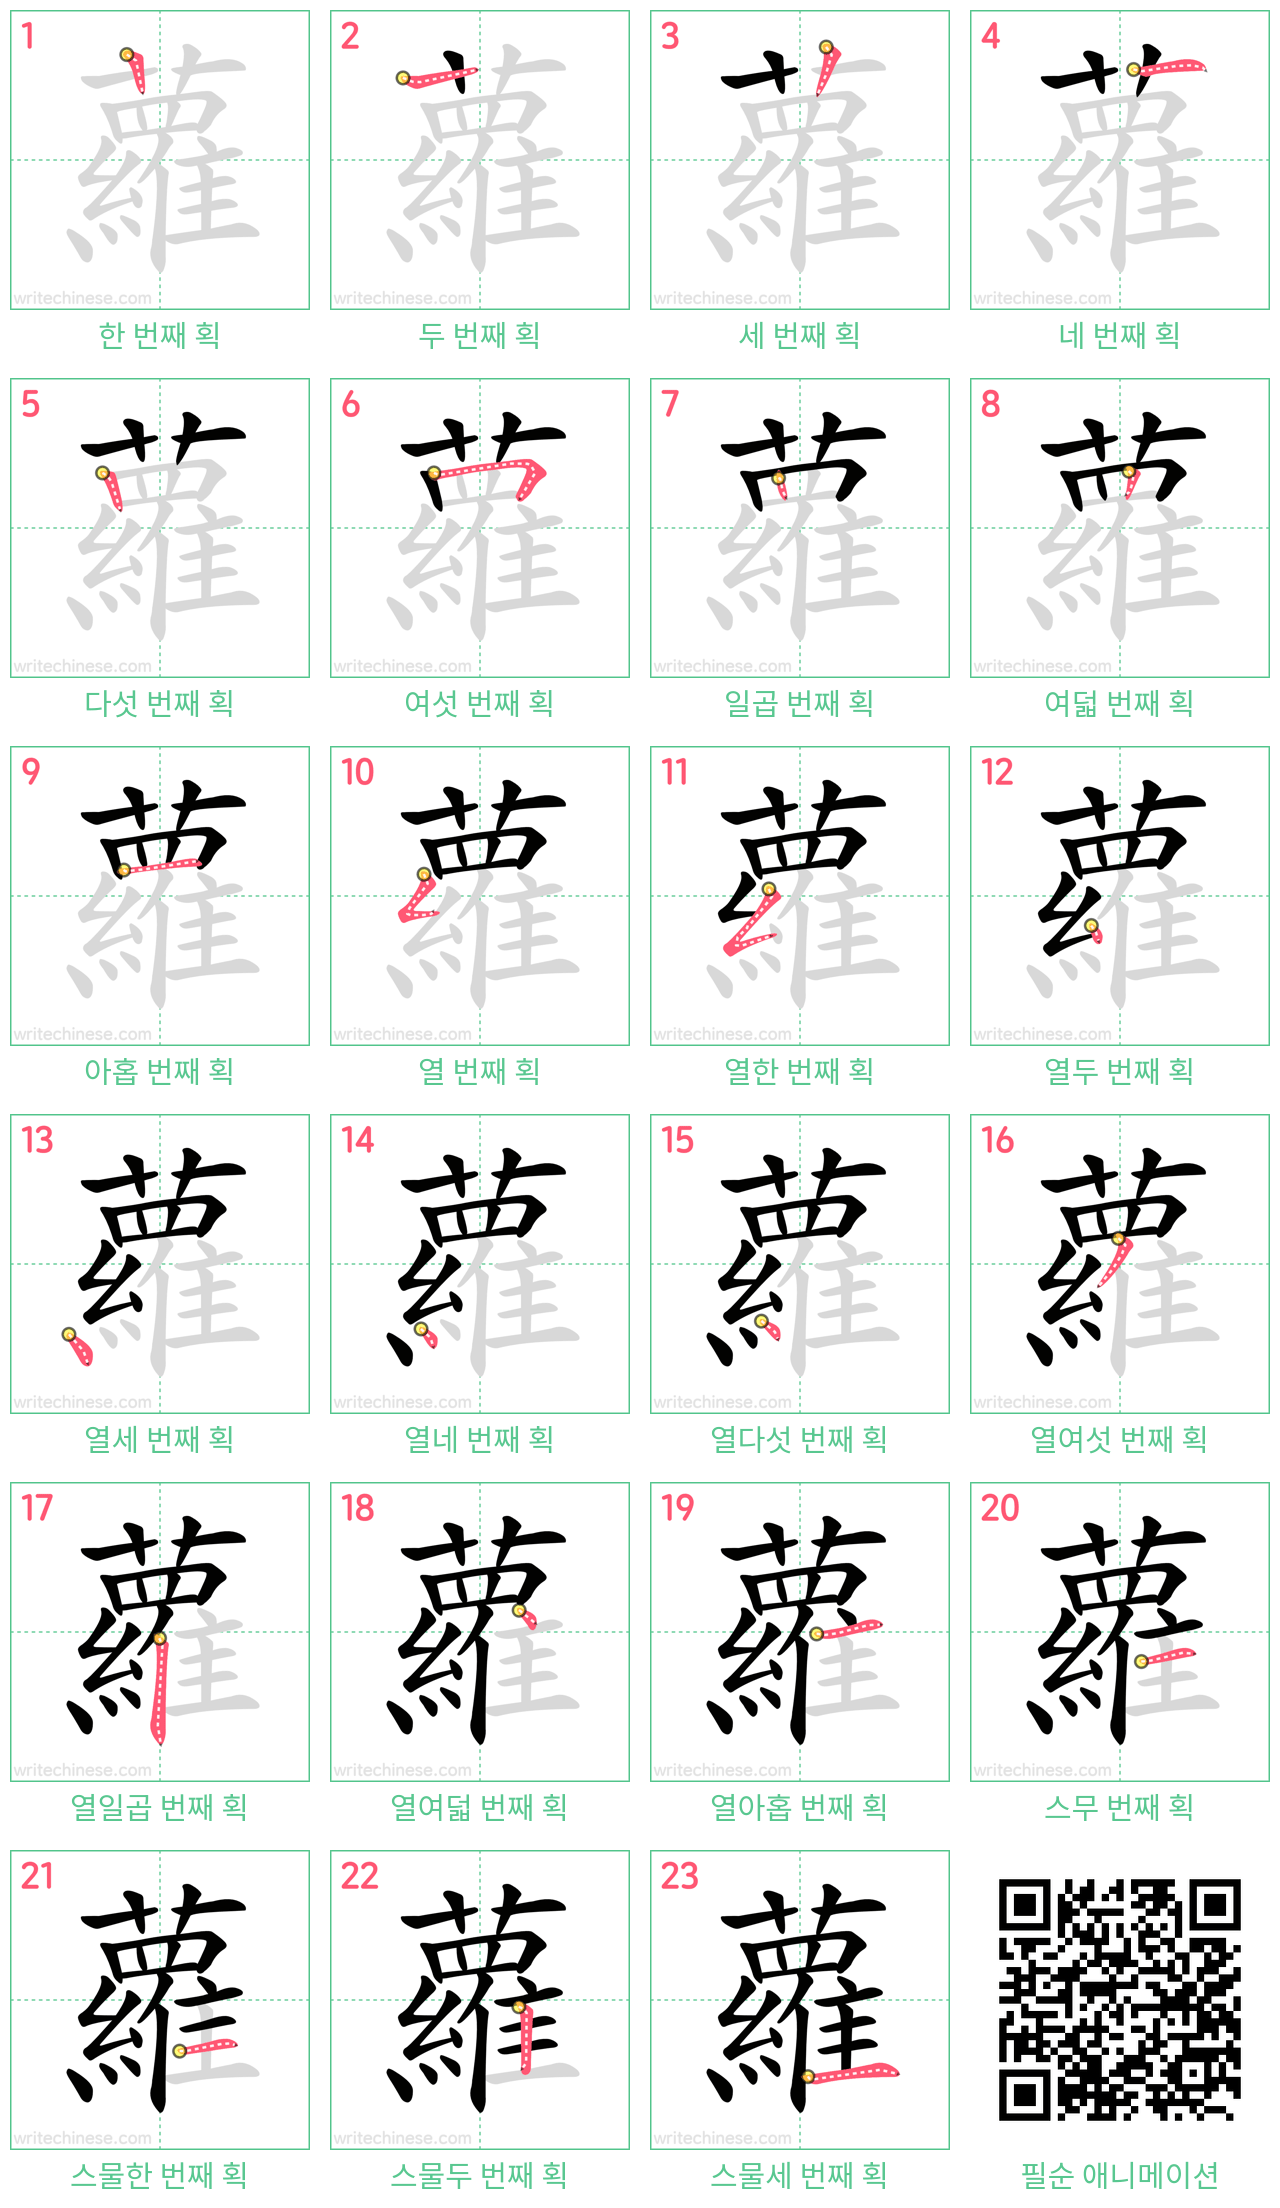 蘿 step-by-step stroke order diagrams